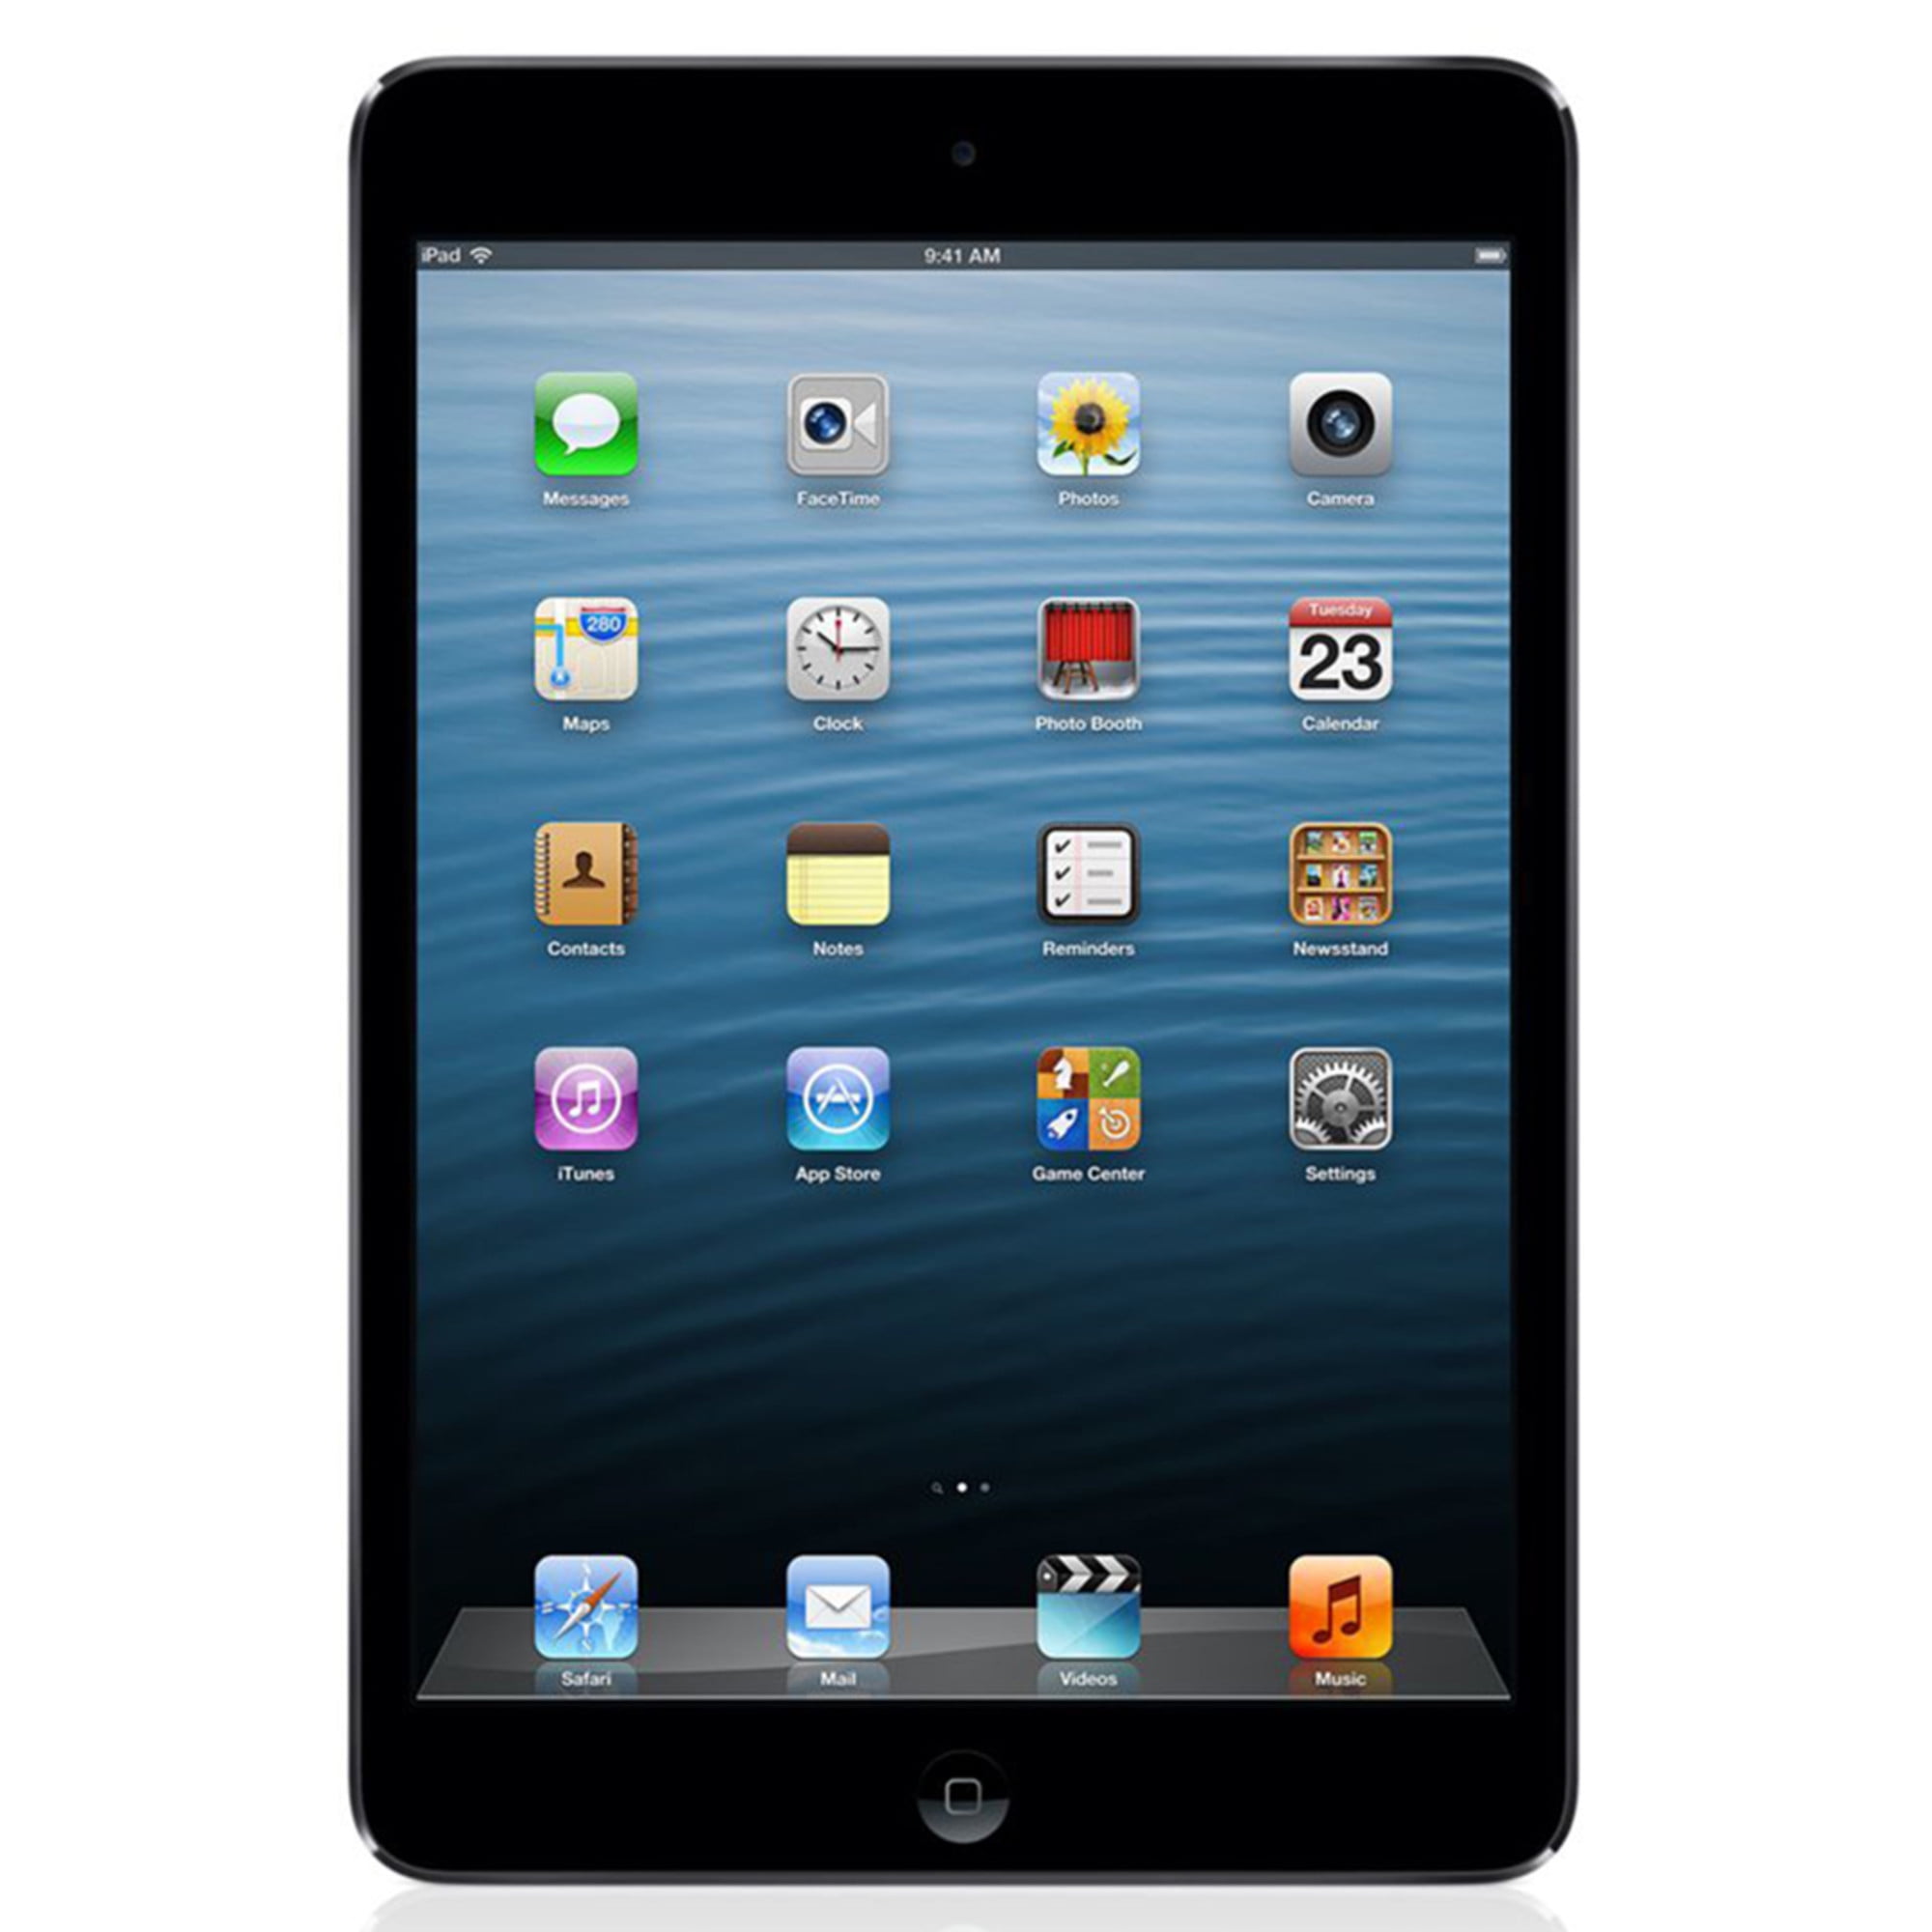 Apple iPad Mini 16GB Wi-Fi Enabled Tablet w/ 5MP Camera - Silver